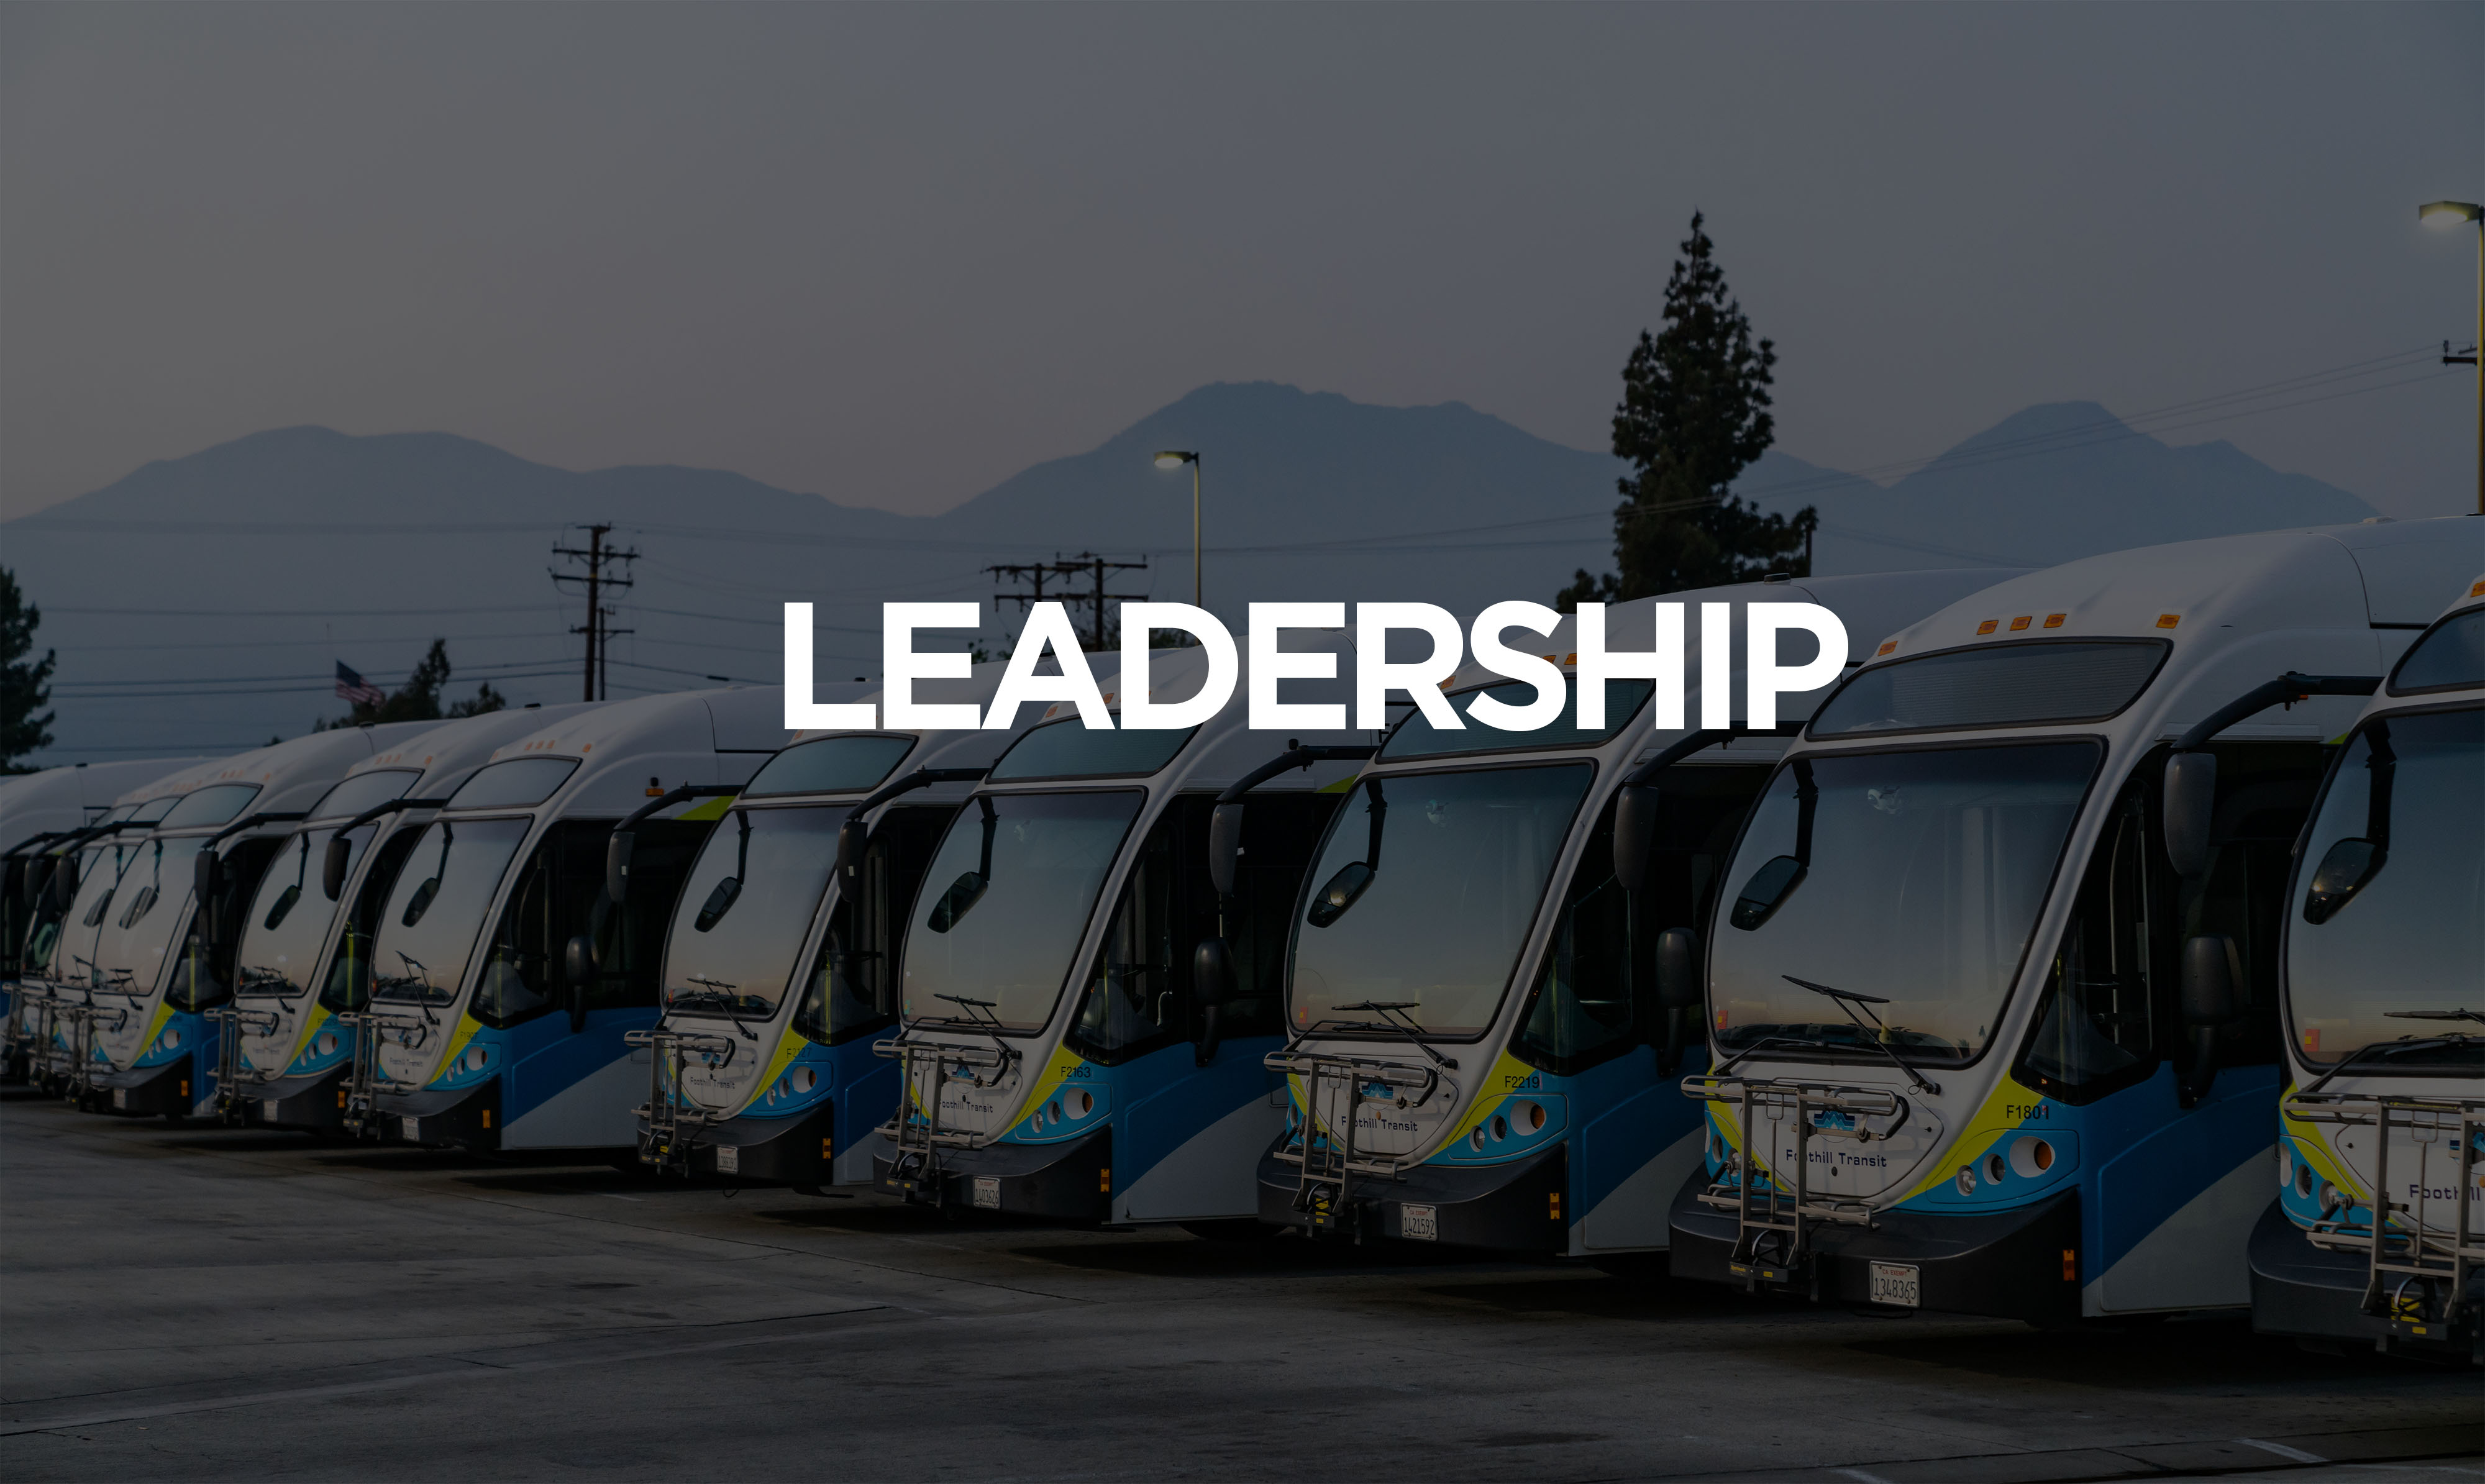 列に並んでいる 10 台のバスがリーダーシップを発揮して正面から示されています